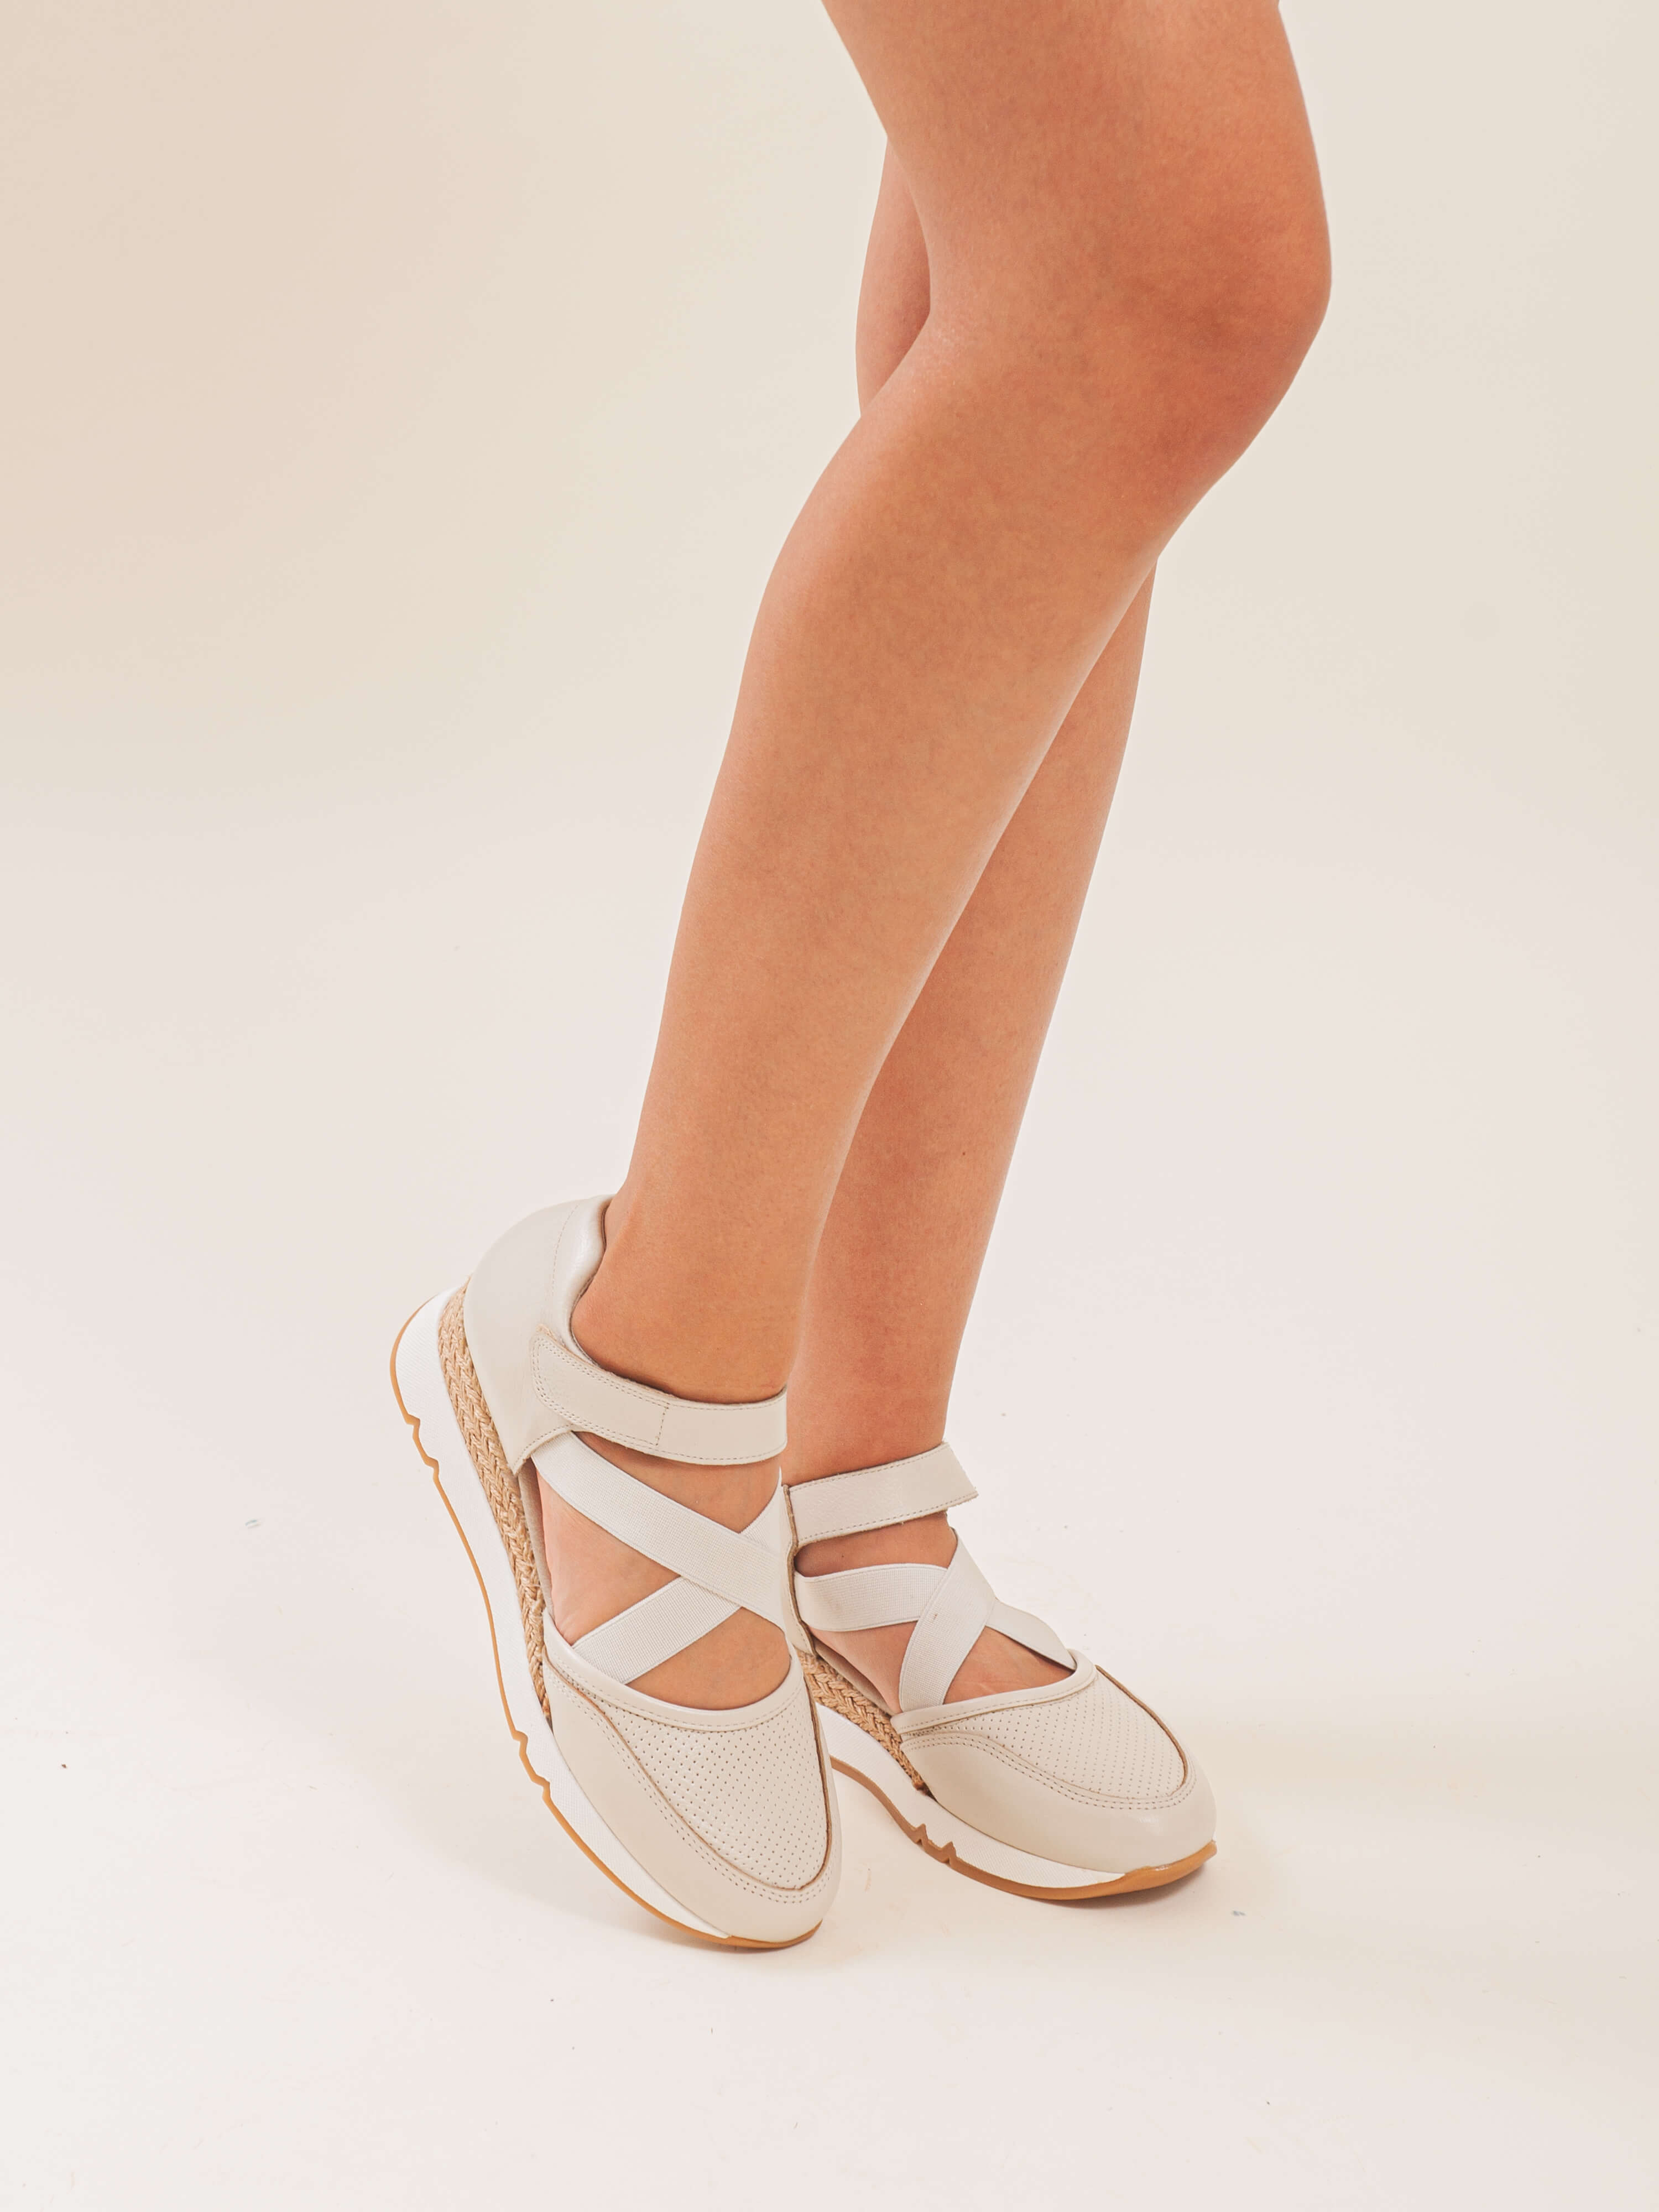 Sandalia deportiva para mujer ligeras y cómodas ideal para uso diario.